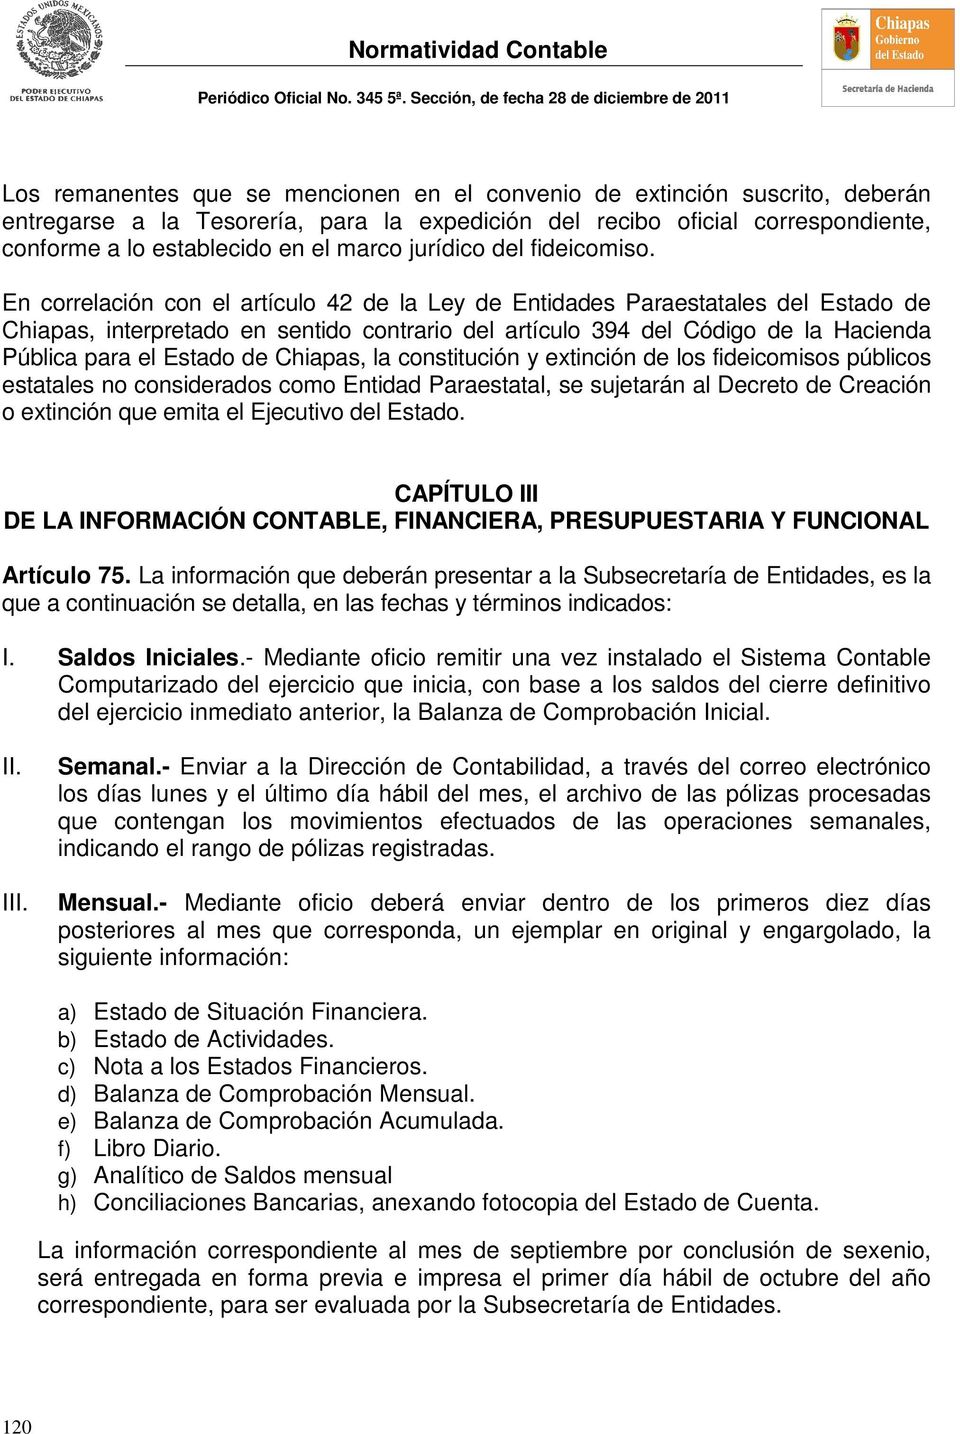 En correlación con el artículo 42 de la Ley de Entidades Paraestatales del Estado de Chiapas, interpretado en sentido contrario del artículo 394 del Código de la Hacienda Pública para el Estado de